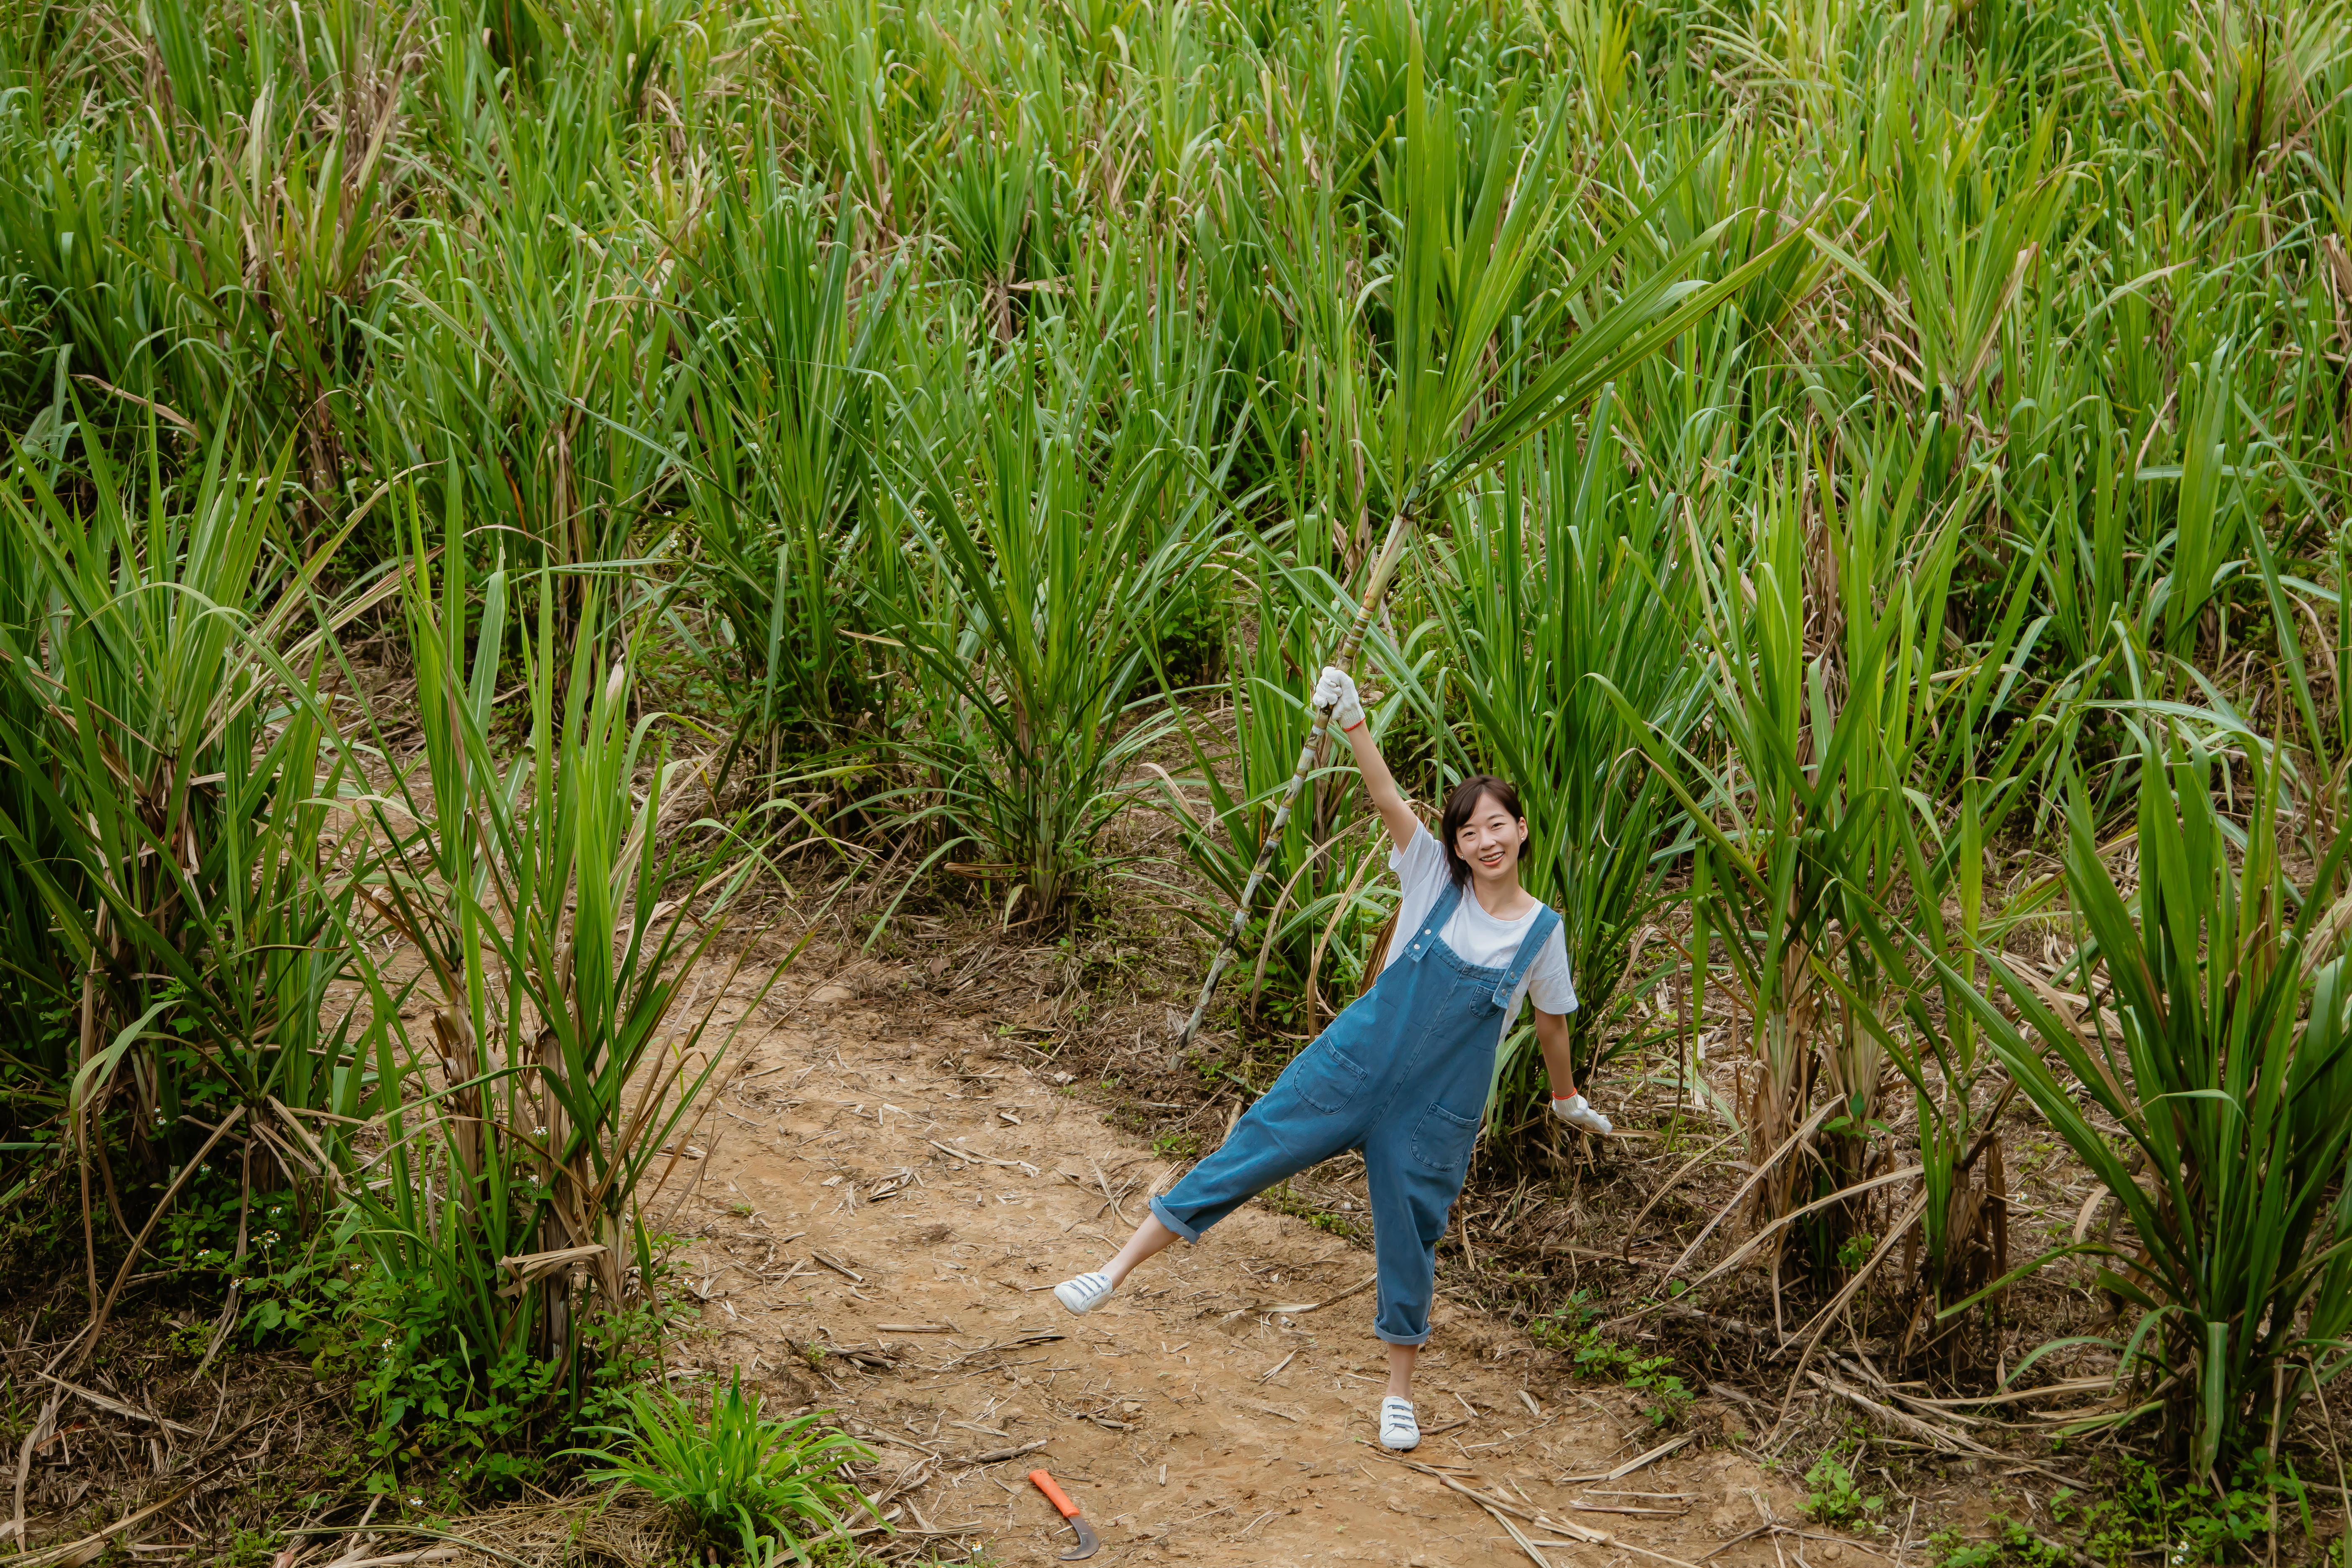 遊客體驗下田砍甘蔗的樂趣。新城風糖提供